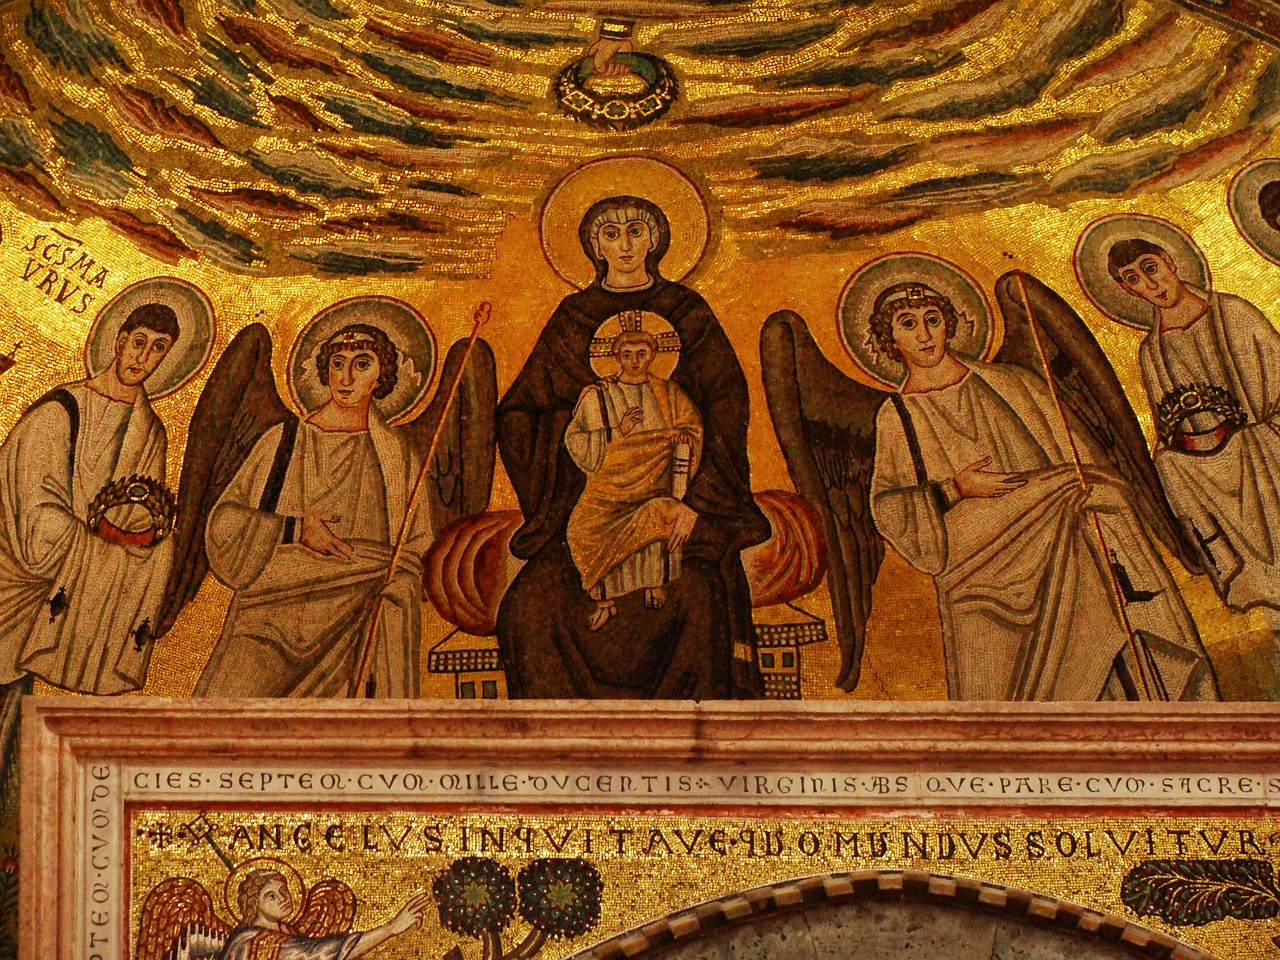 Mozaika, Mergelė Marija, Kūdikis Jesus, Angelai, Saint, Krikščionybė, Bažnyčia, Religija, Mary, Senas